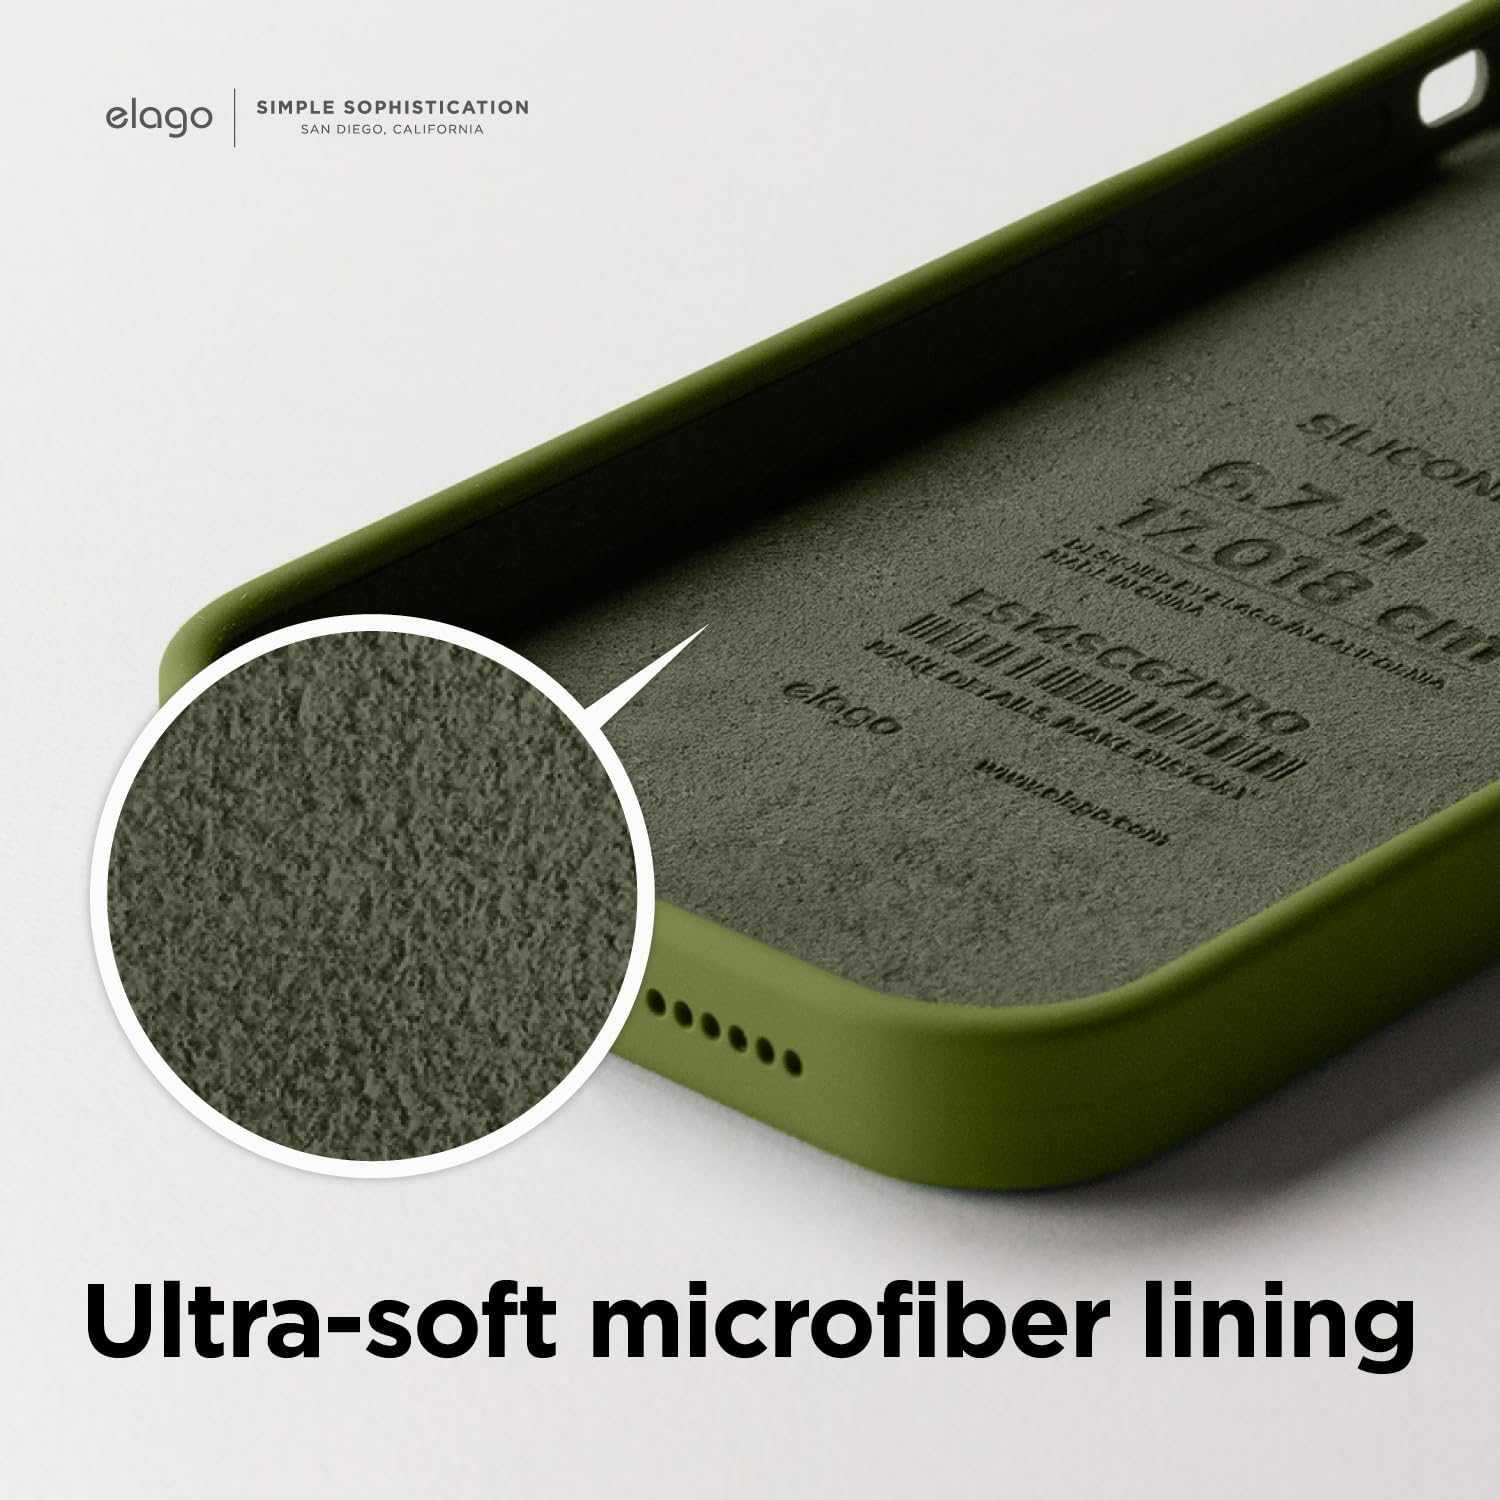 Płynne silikonowe etui kompatybilne z iPhone 14 etui 6,1" cedr zielony